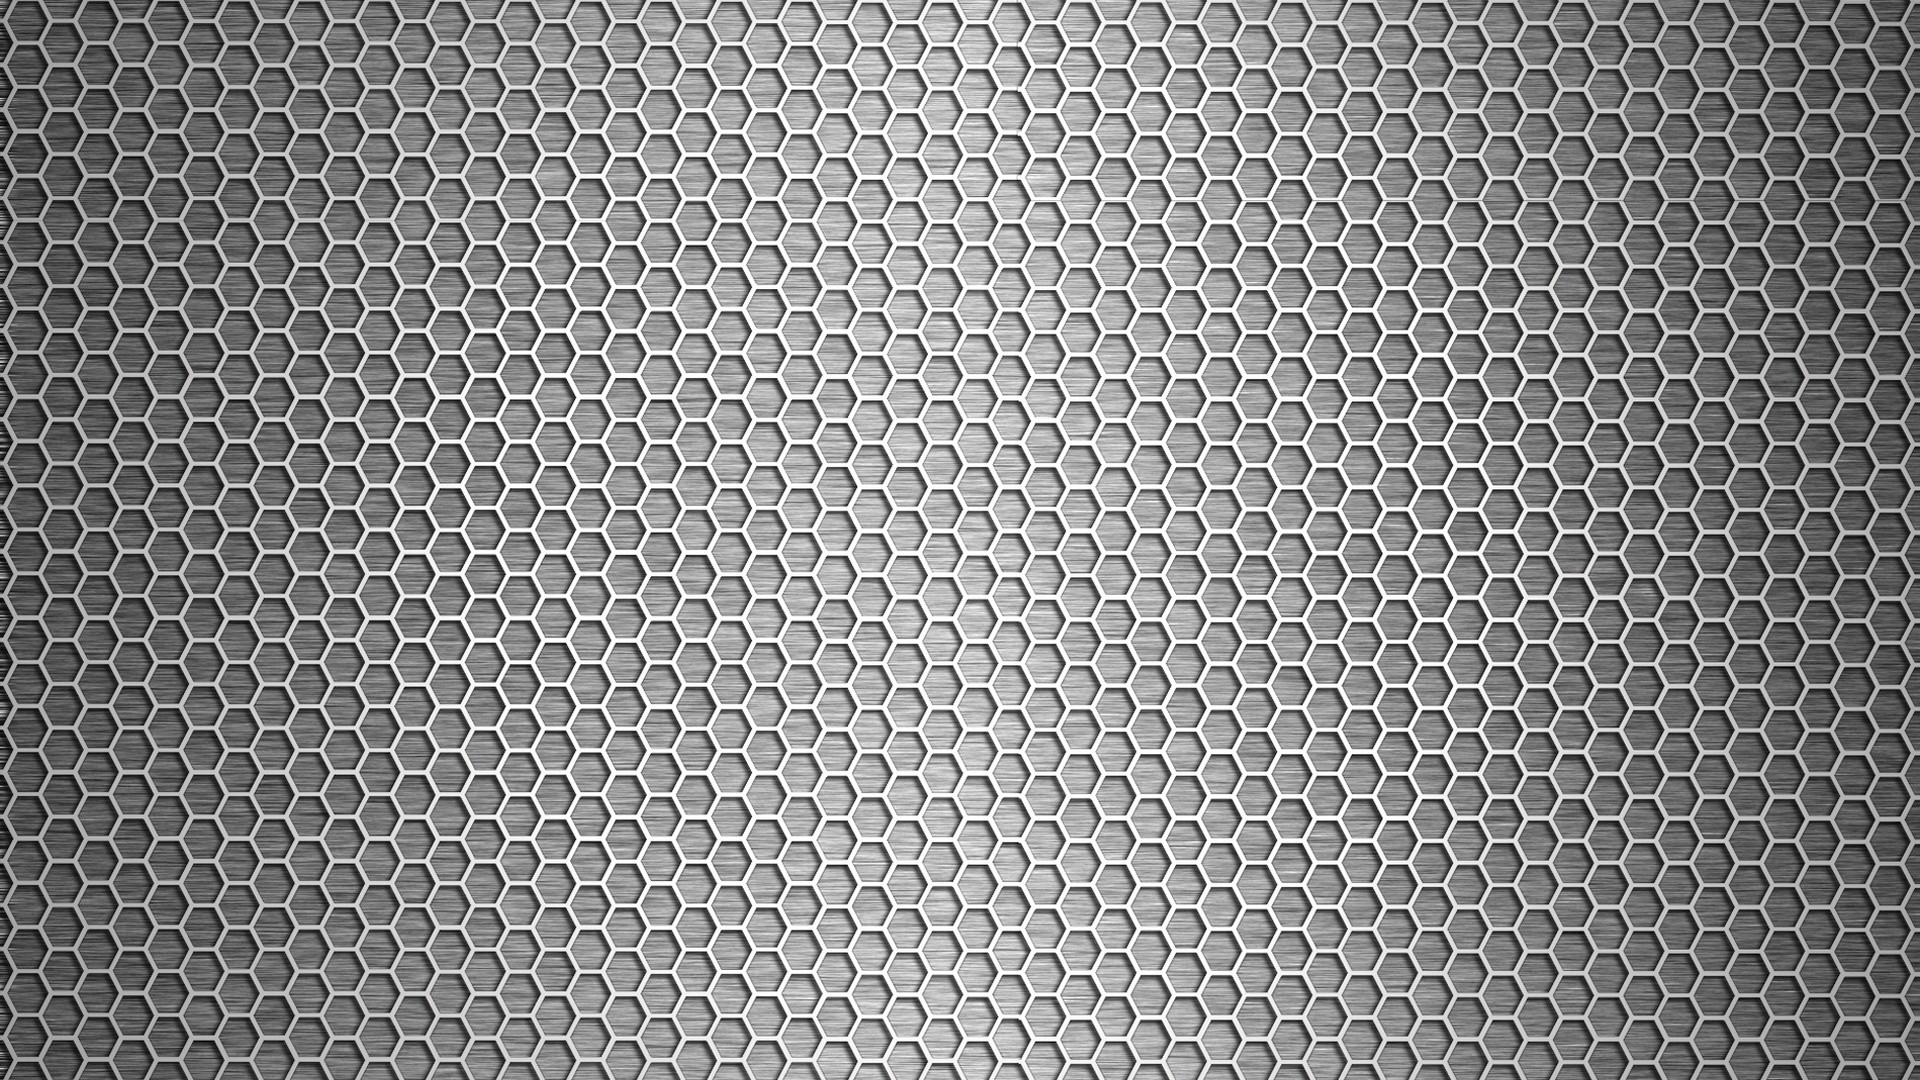 Wallpaper Patterns Metal Metallic Image